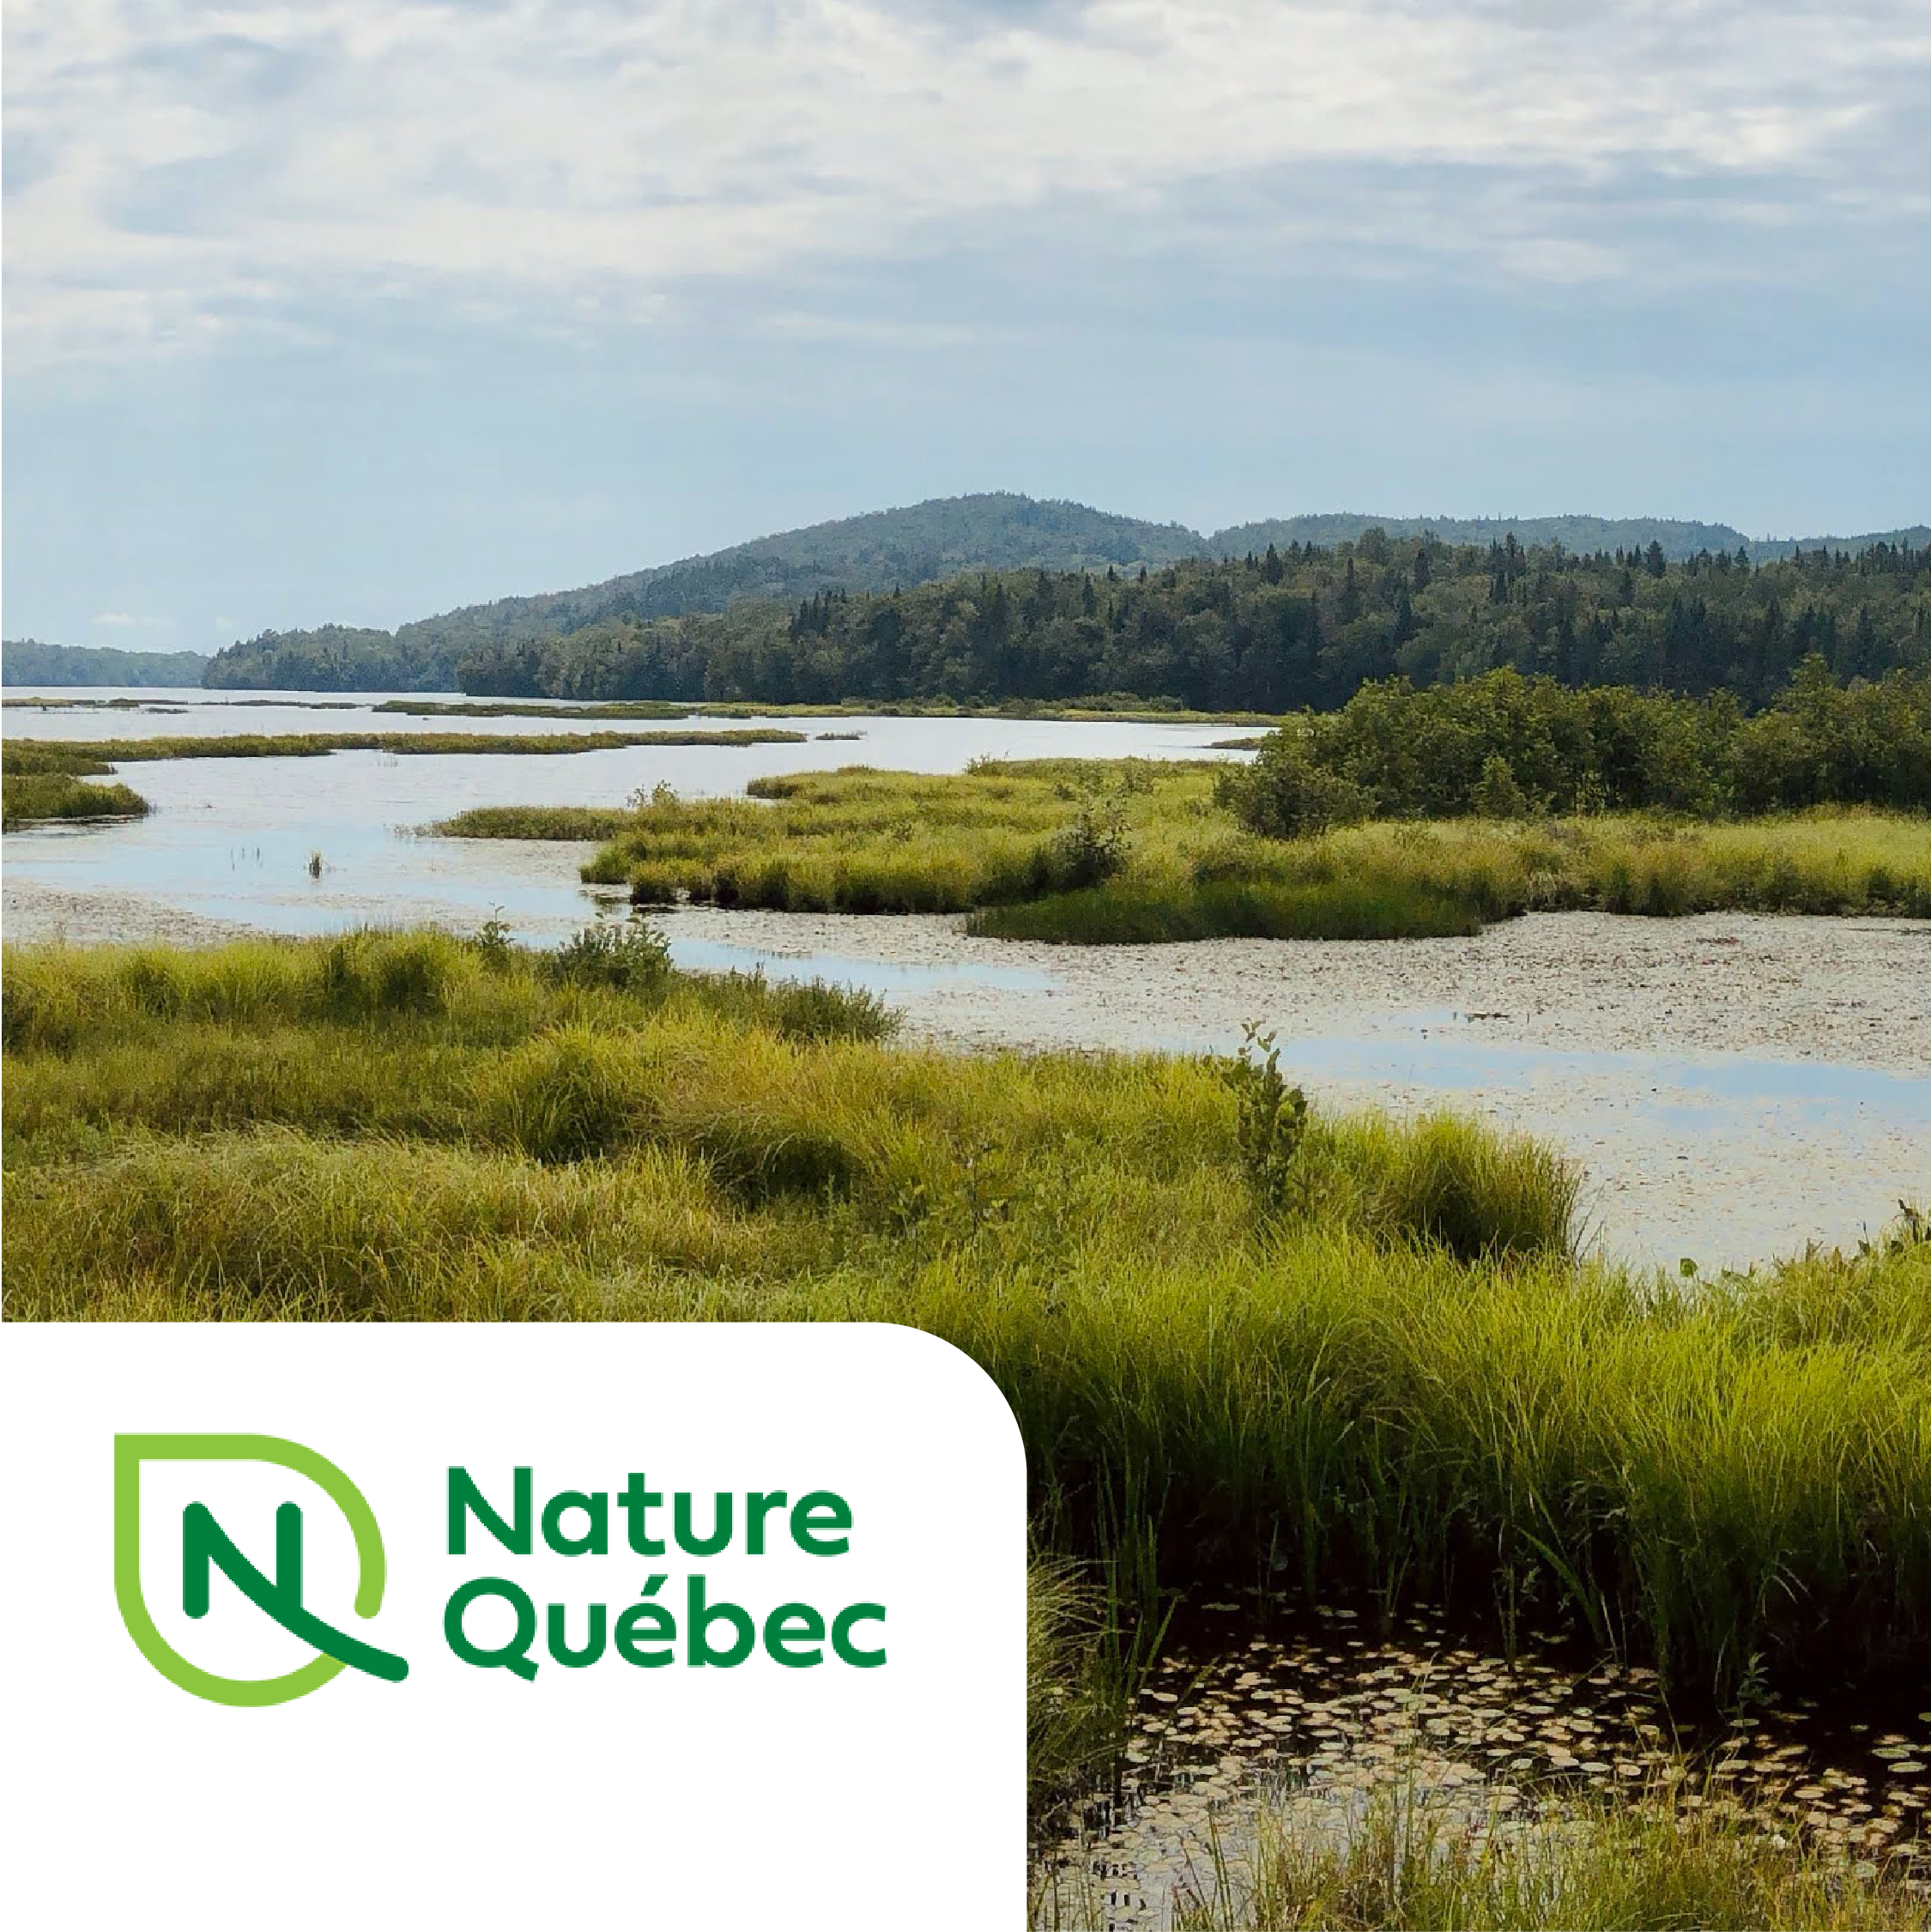 Nature Quebec